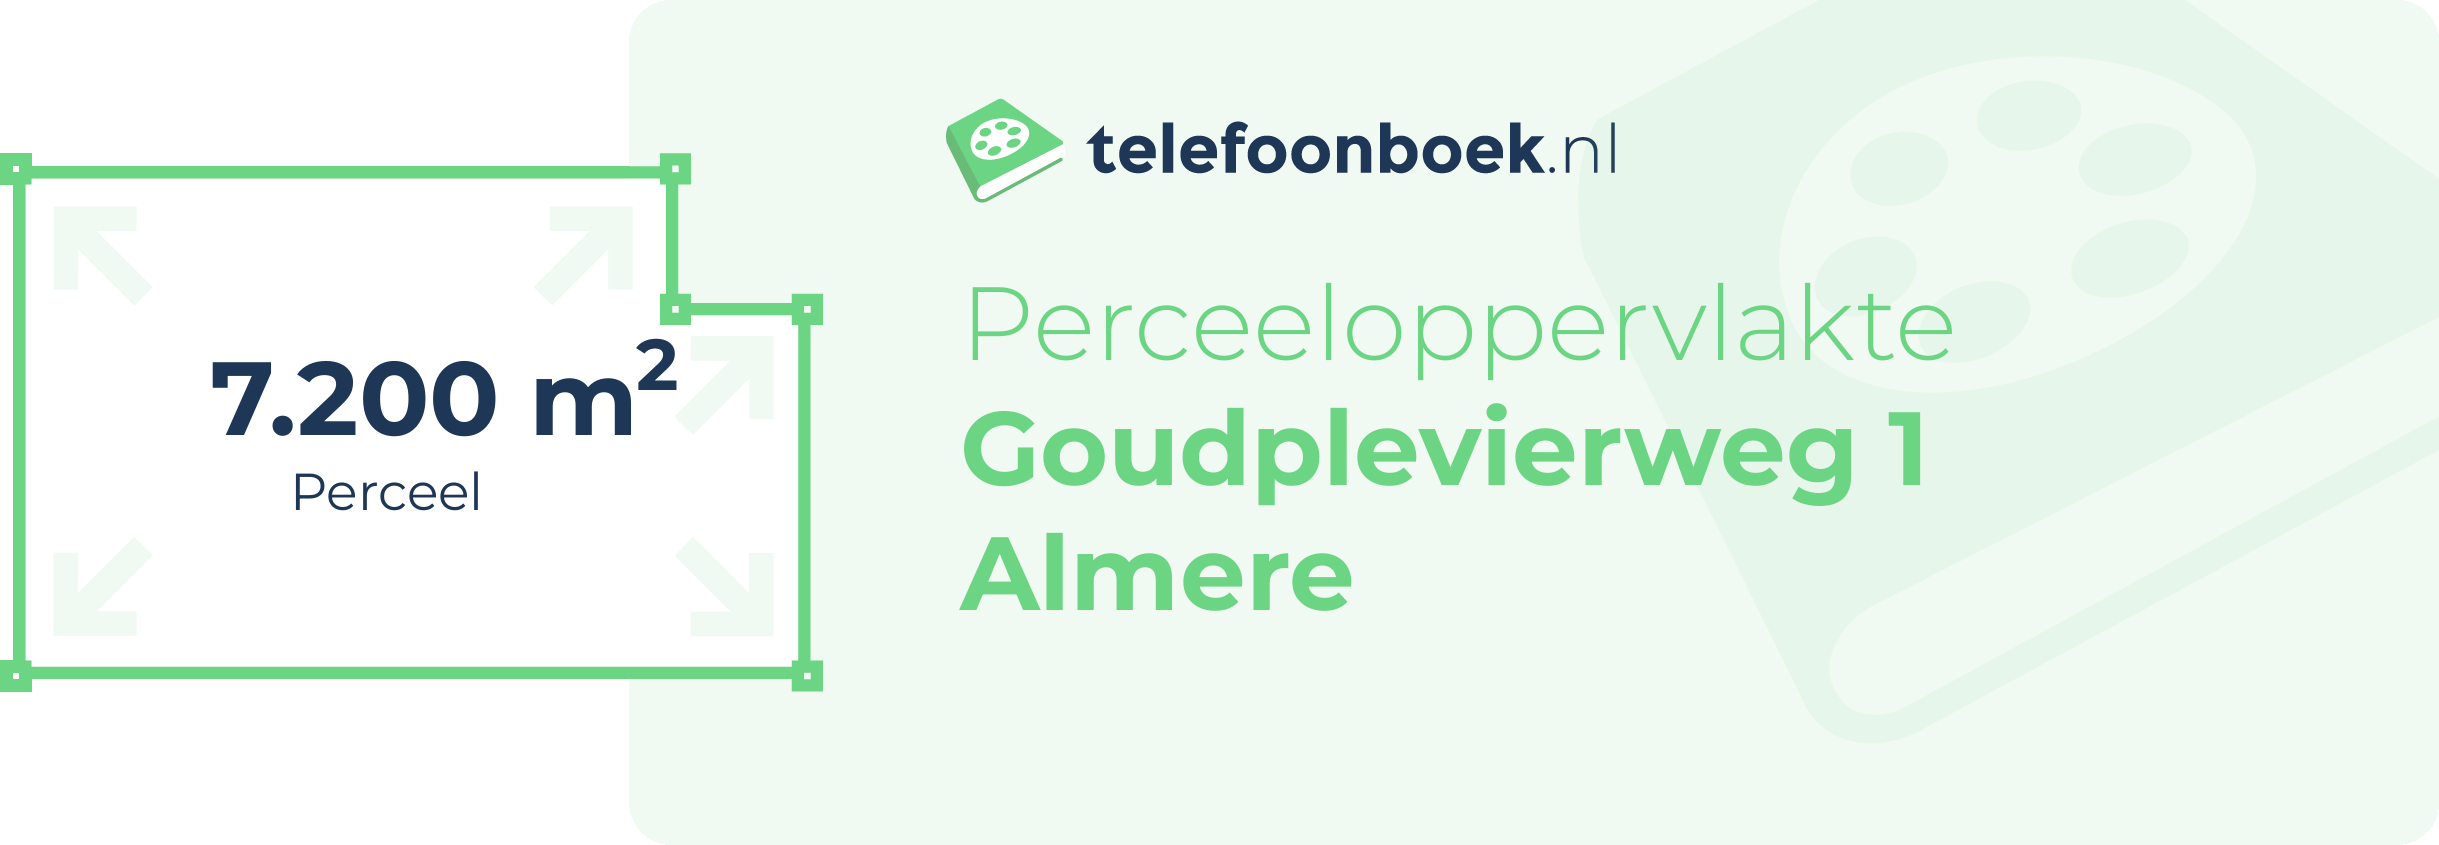 Perceeloppervlakte Goudplevierweg 1 Almere